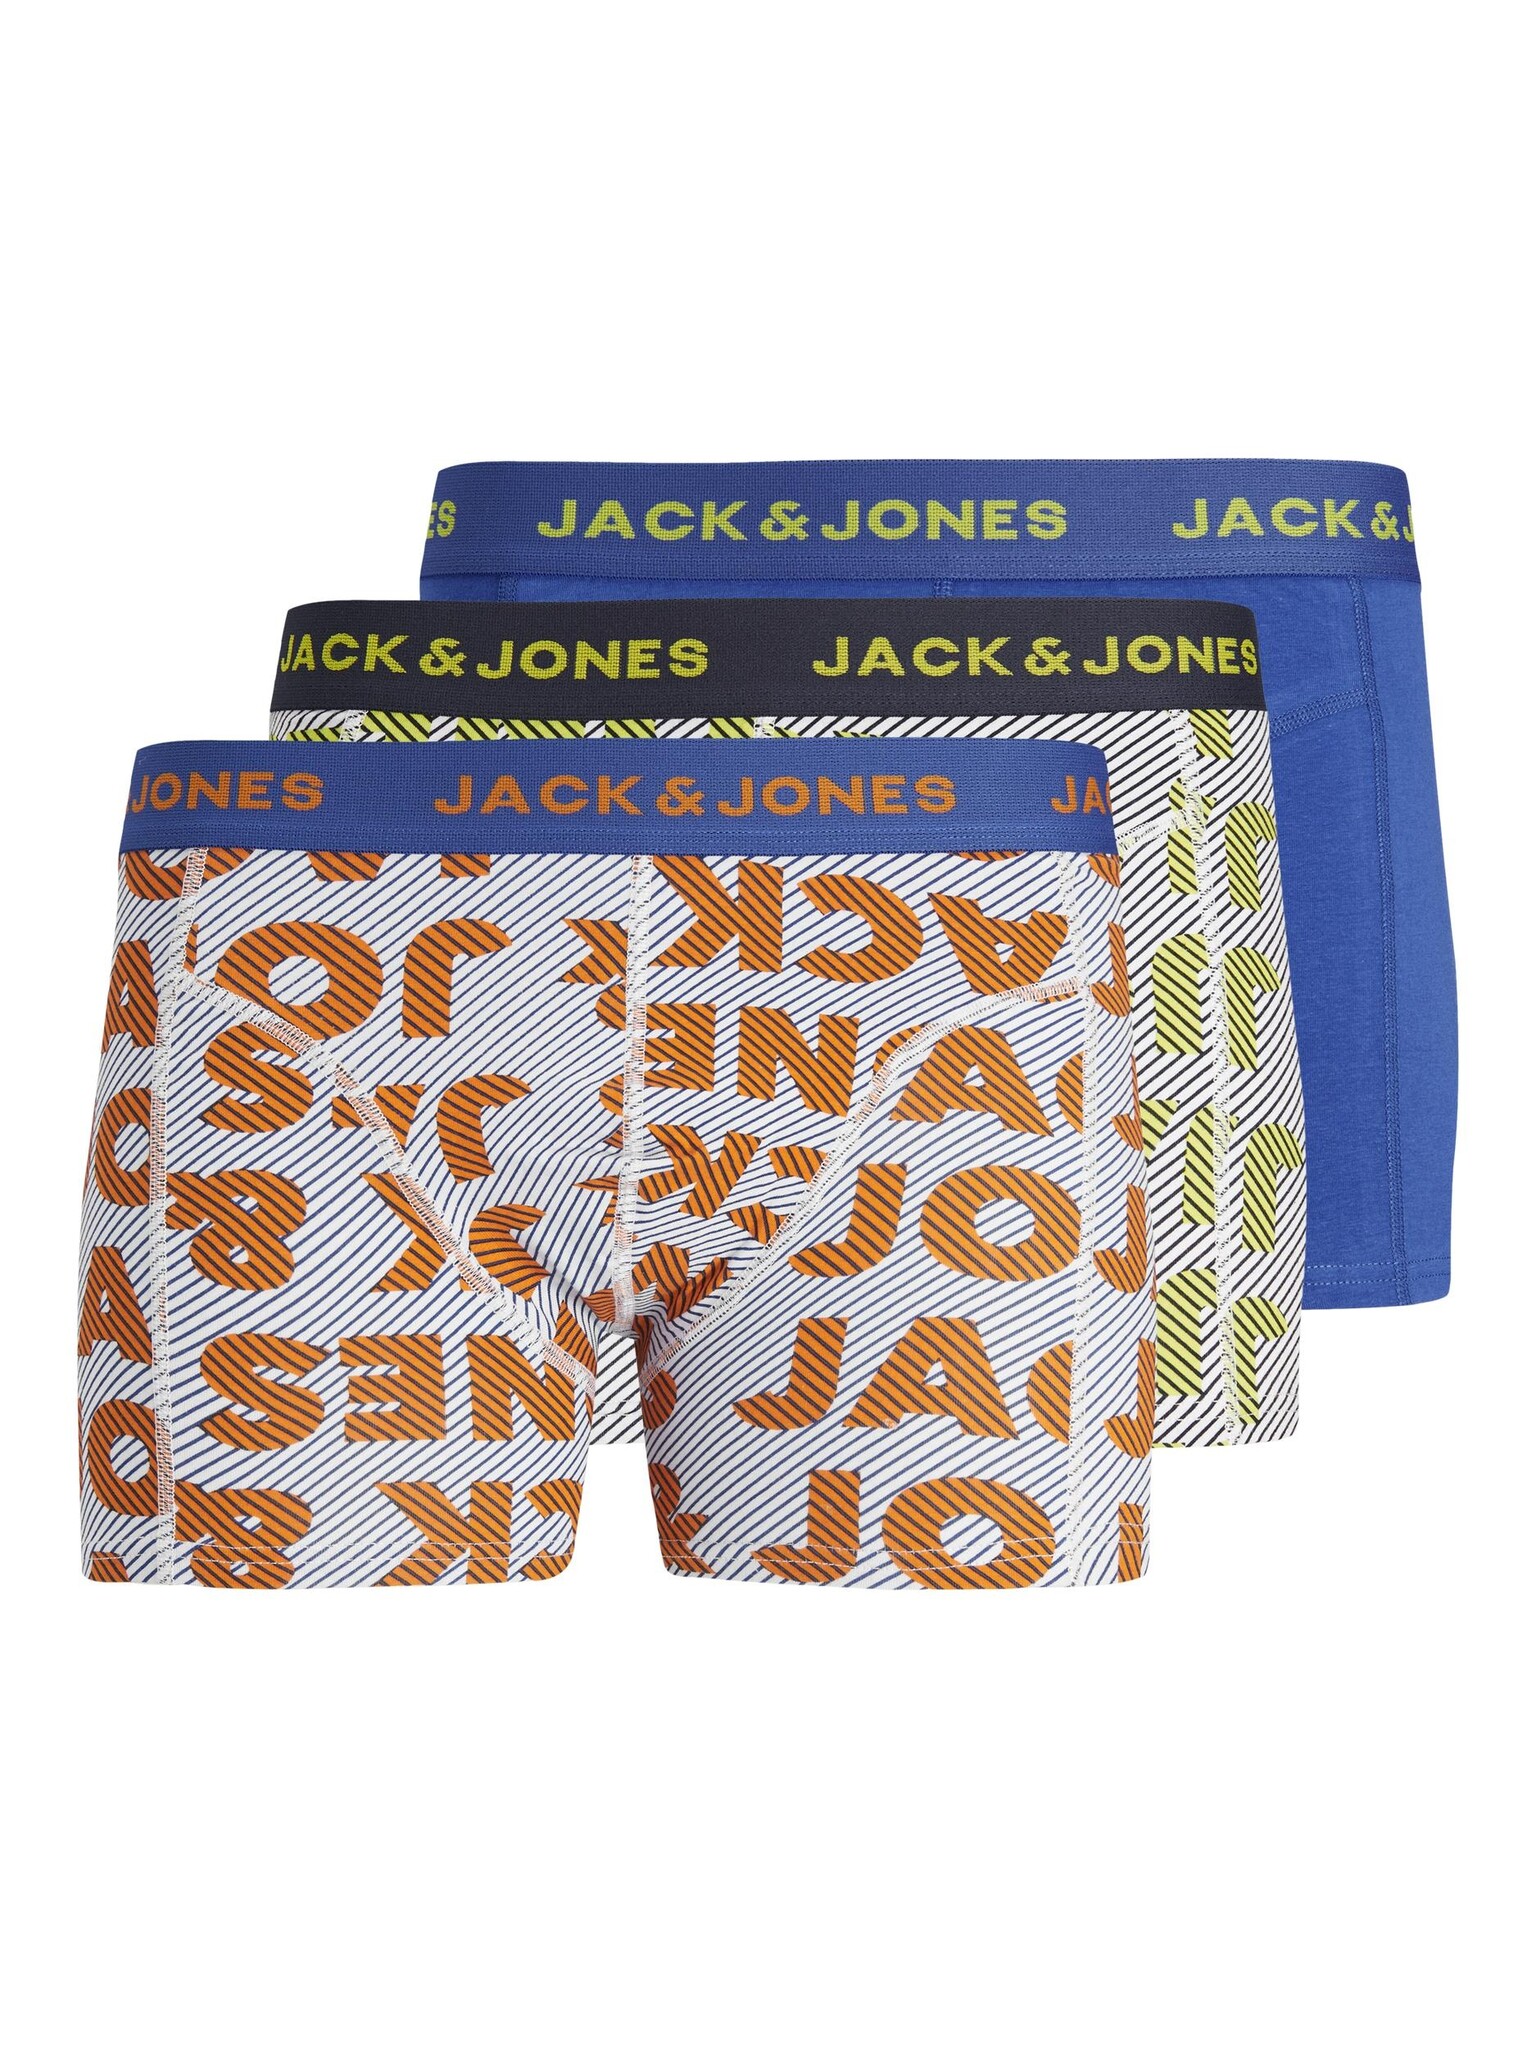 Afbeelding van Jack & Jones Boxershorts jongens jaclogo 3-pack